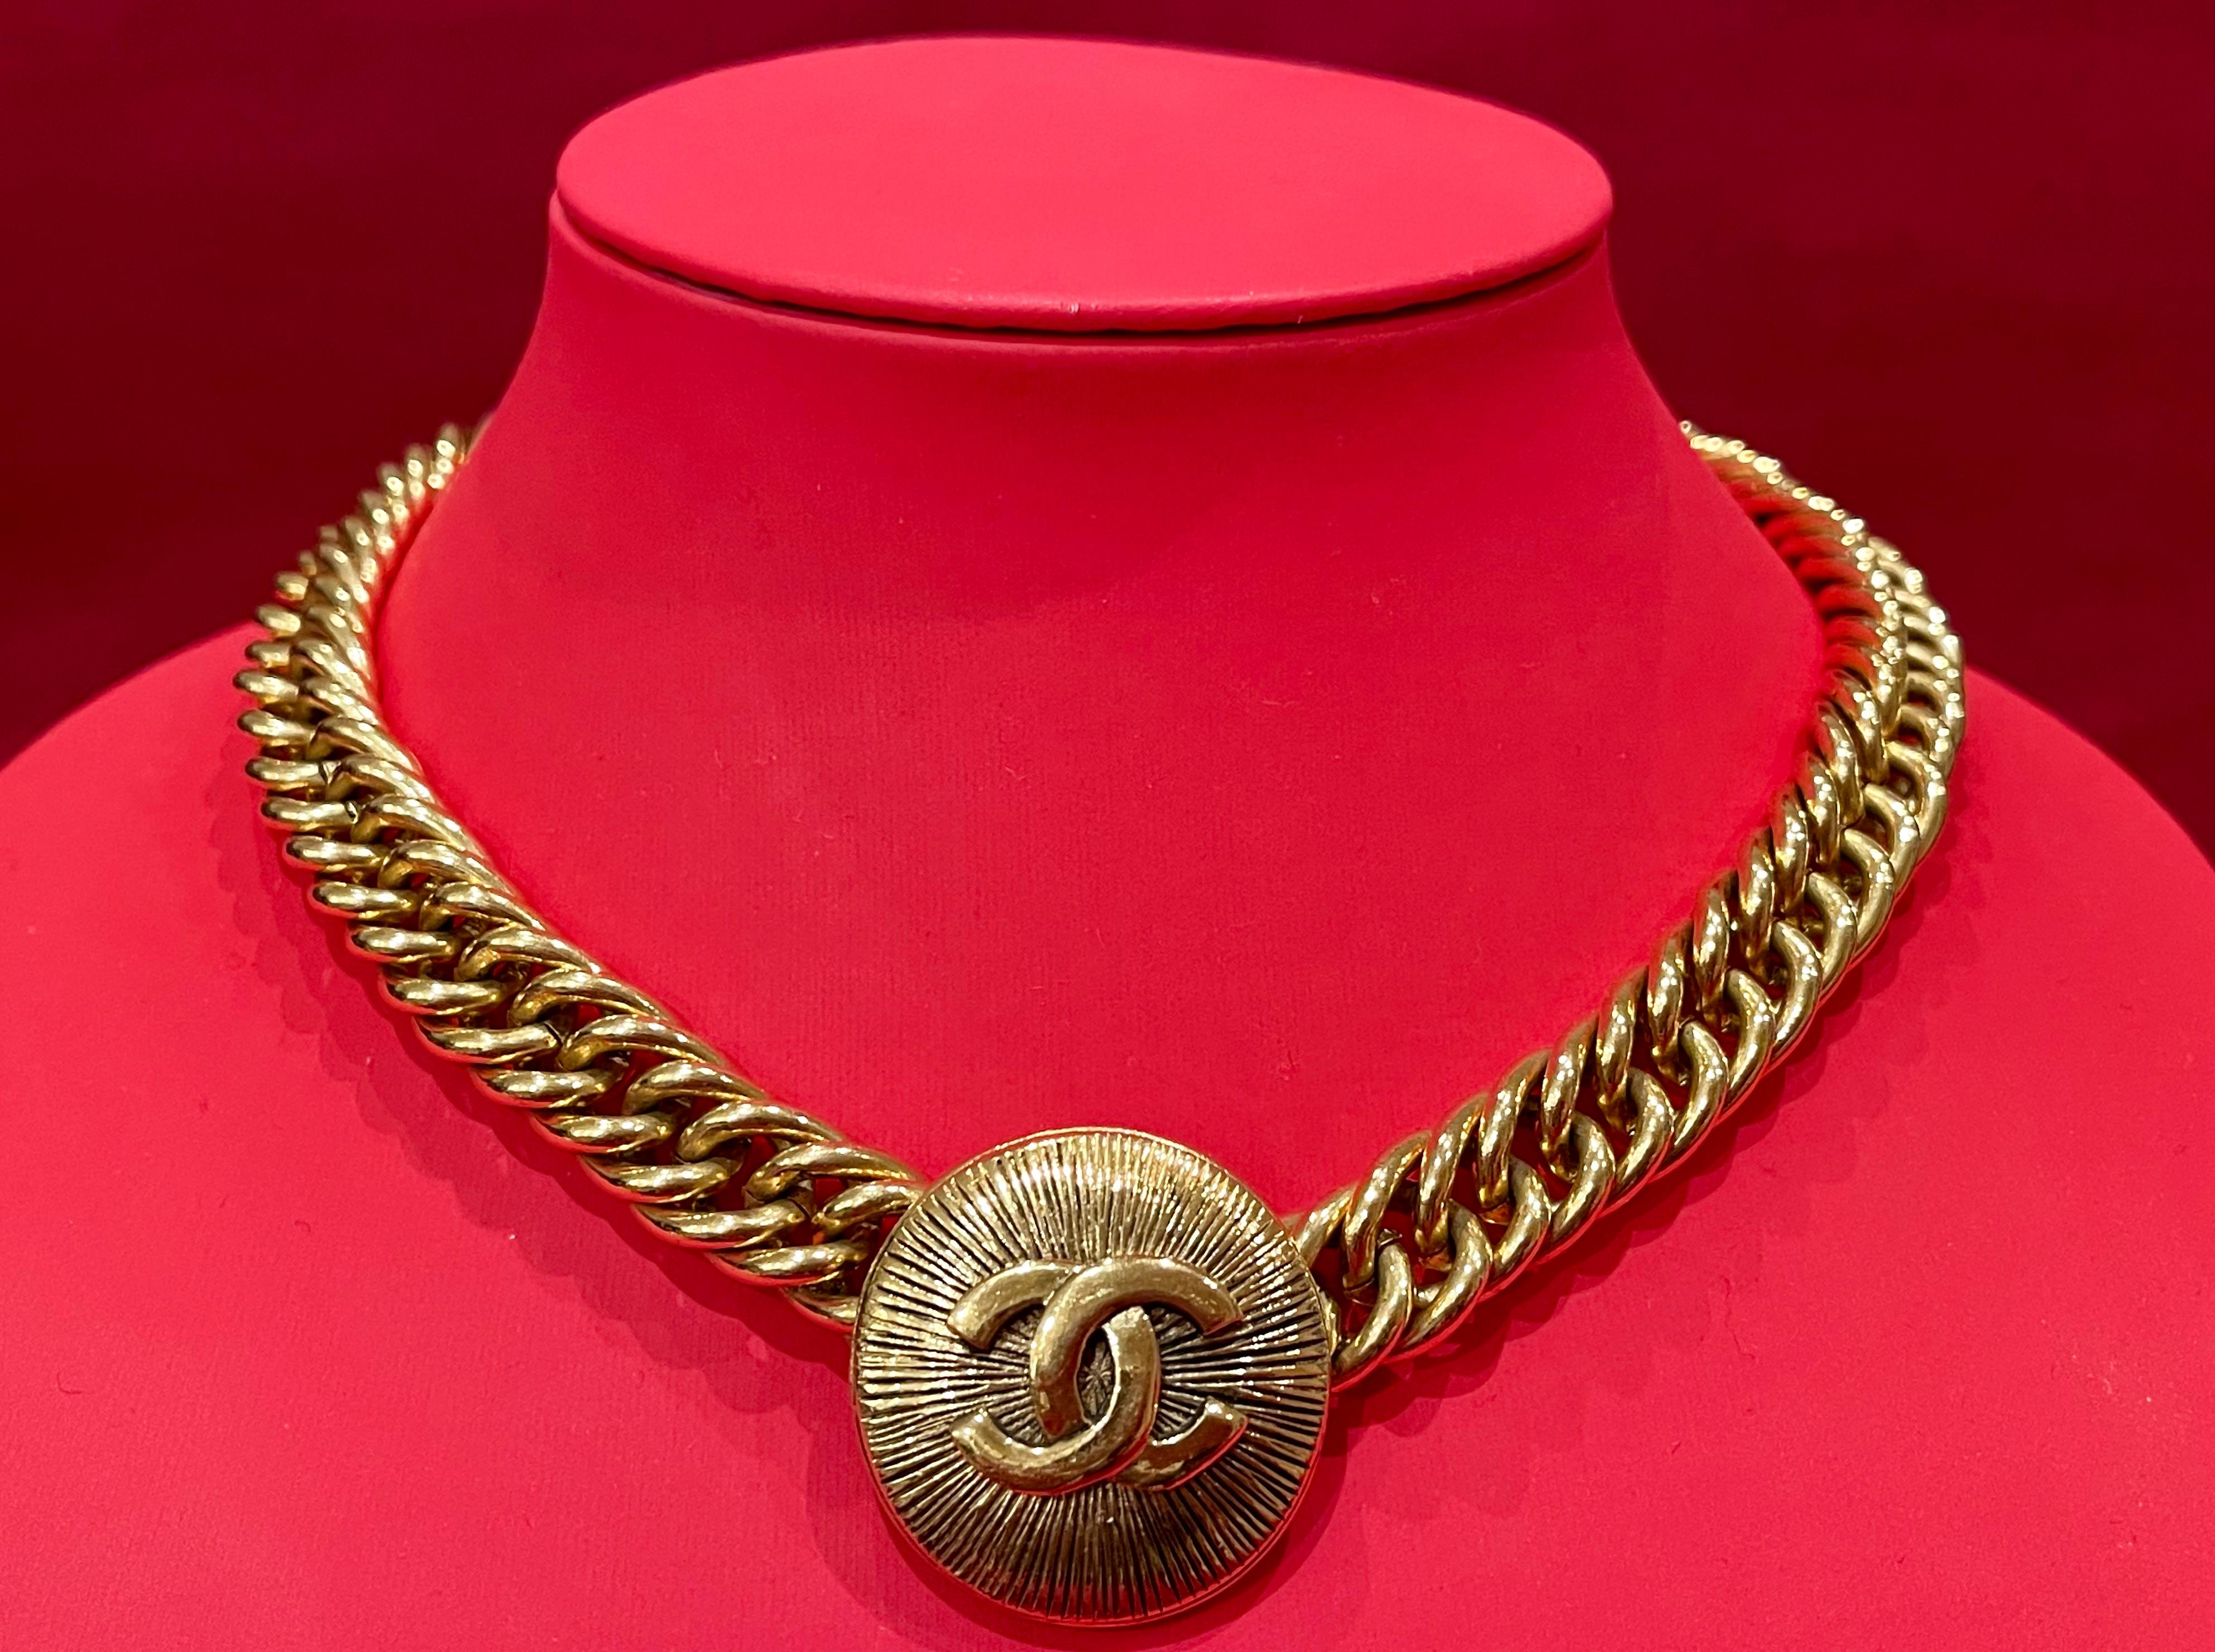 Ravissant collier ras du cou CHANEL authentique en plaqué or en très bon état. Maillons de la chaîne avec pendentif CC rond.